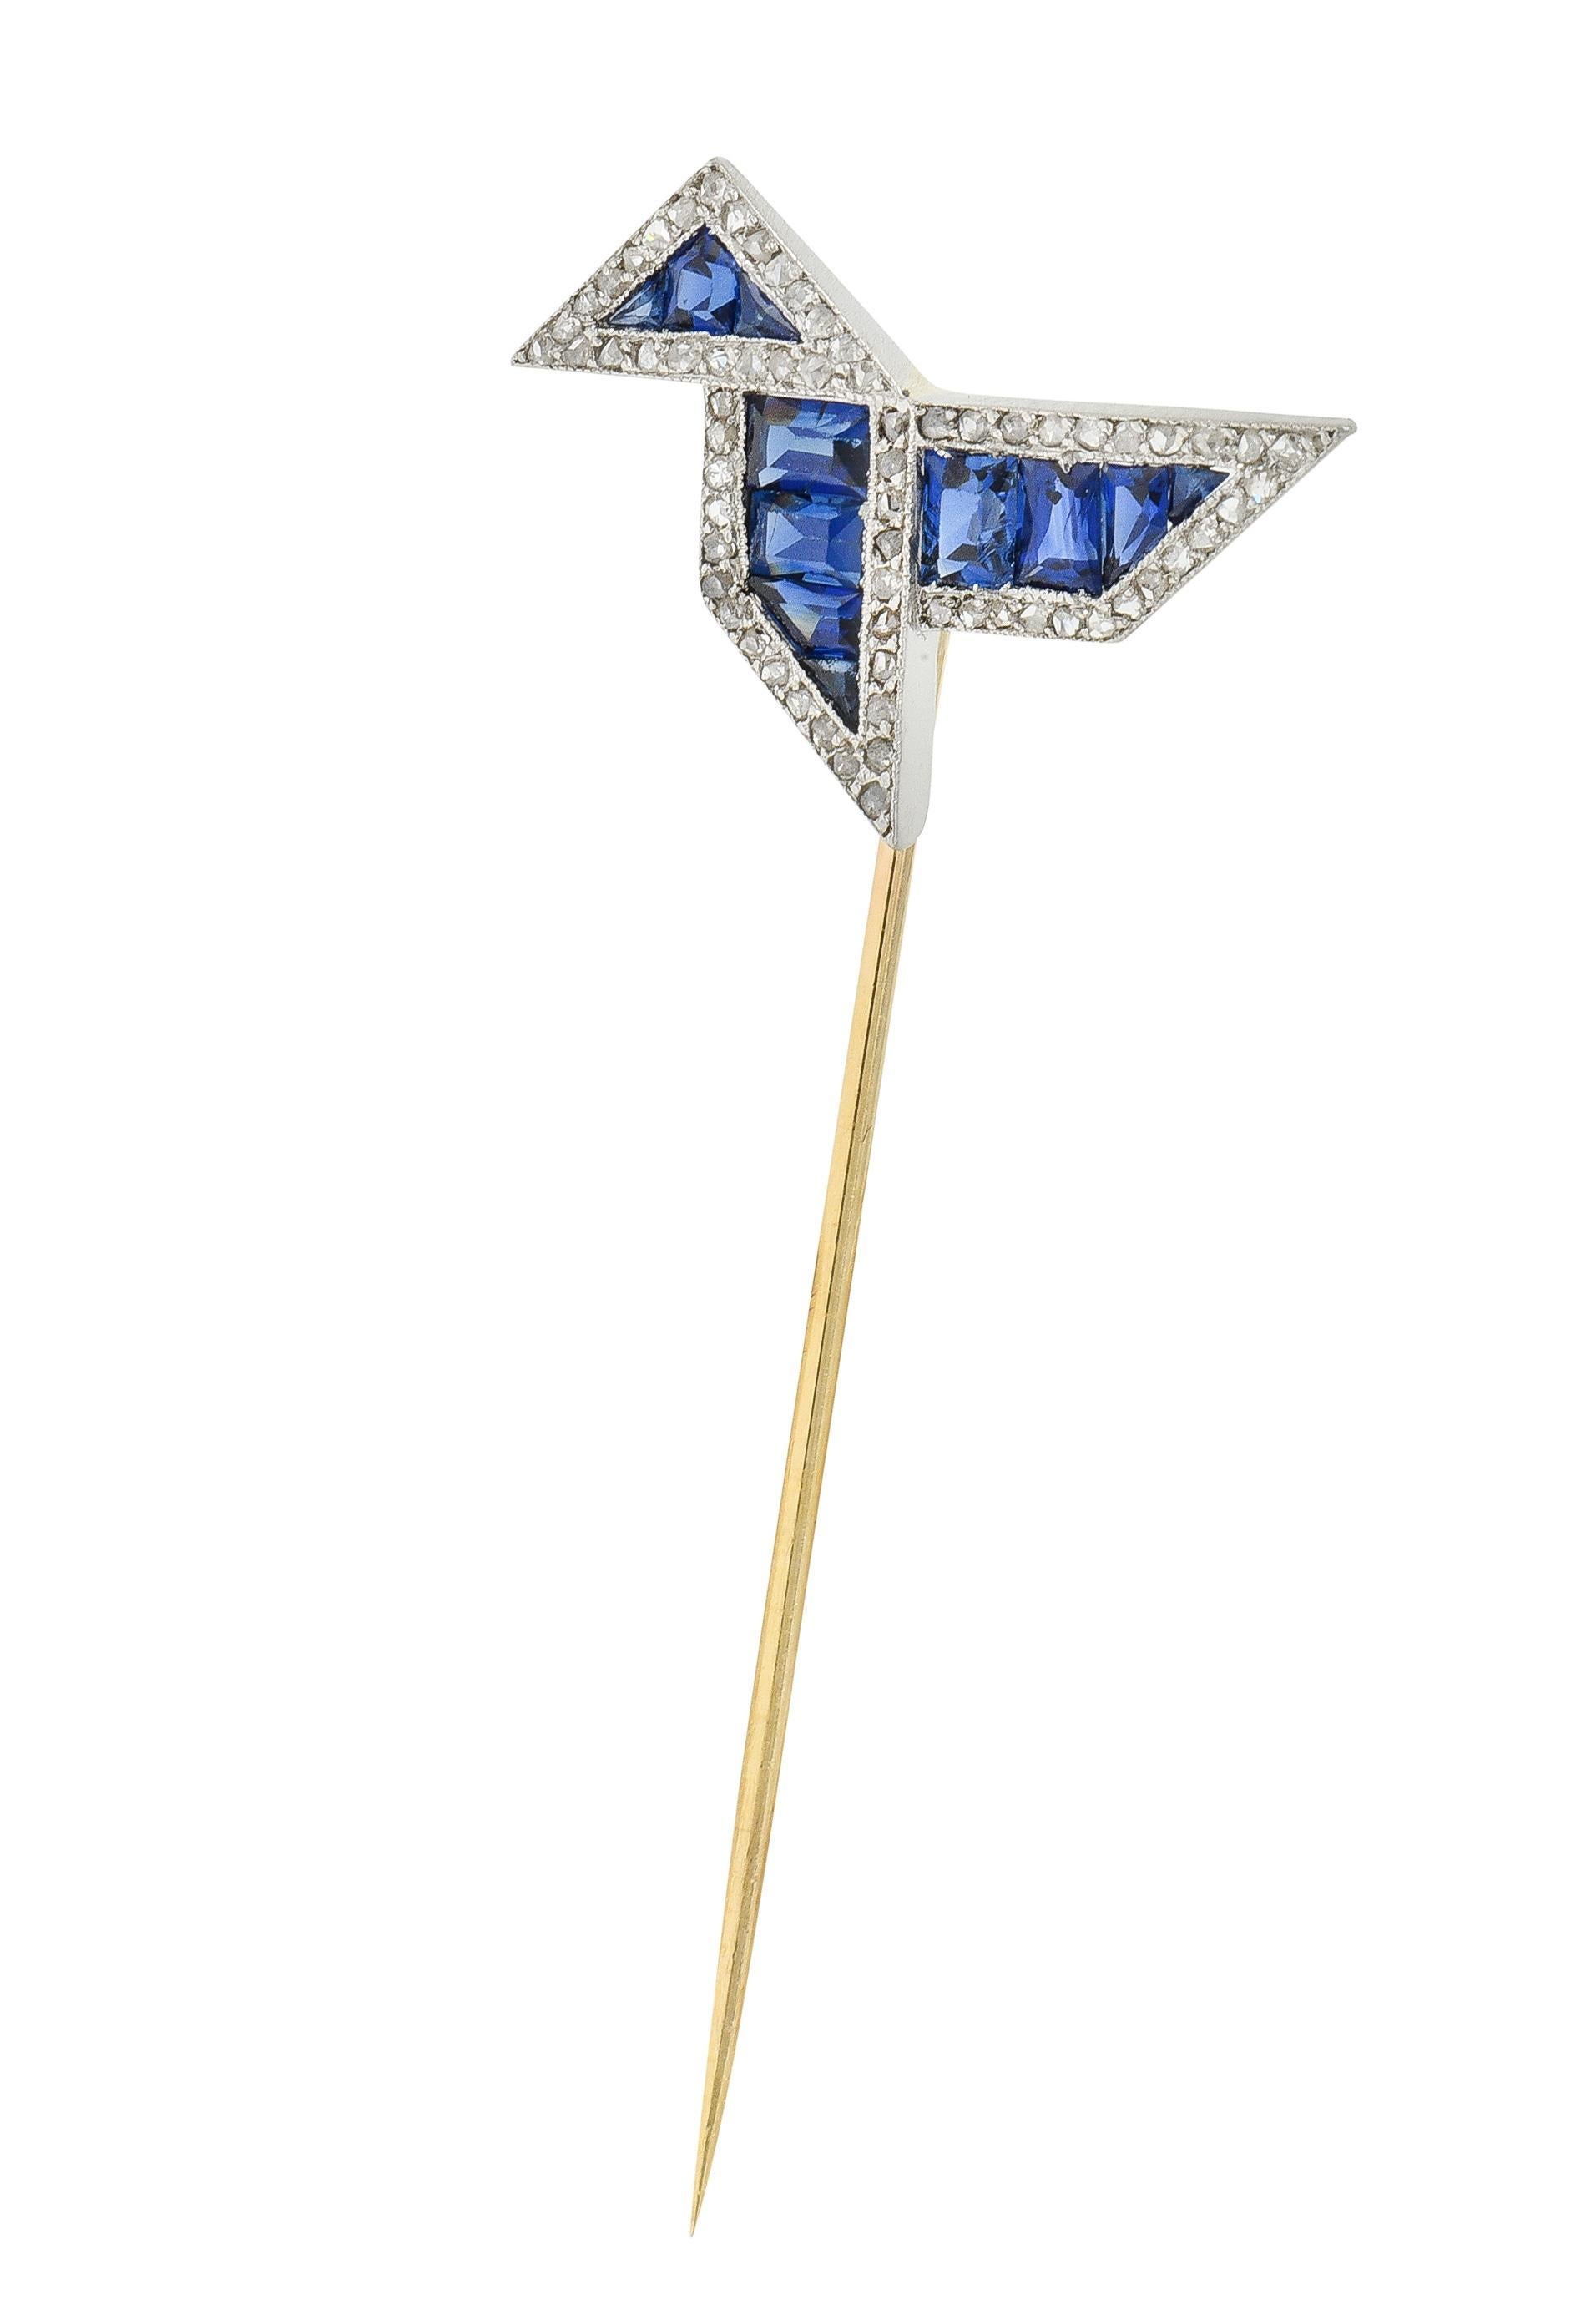 Designt als stilisierter Origami-Vogel mit Saphiren im Baguette- und Kaliberschliff
Mit einem Gesamtgewicht von ca. 2,16 Karat - mittlere transparente blaue Farbe
Kanalfassung auf Platin mit perlenbesetzten Diamanten im Rosenschliff
Mit einem